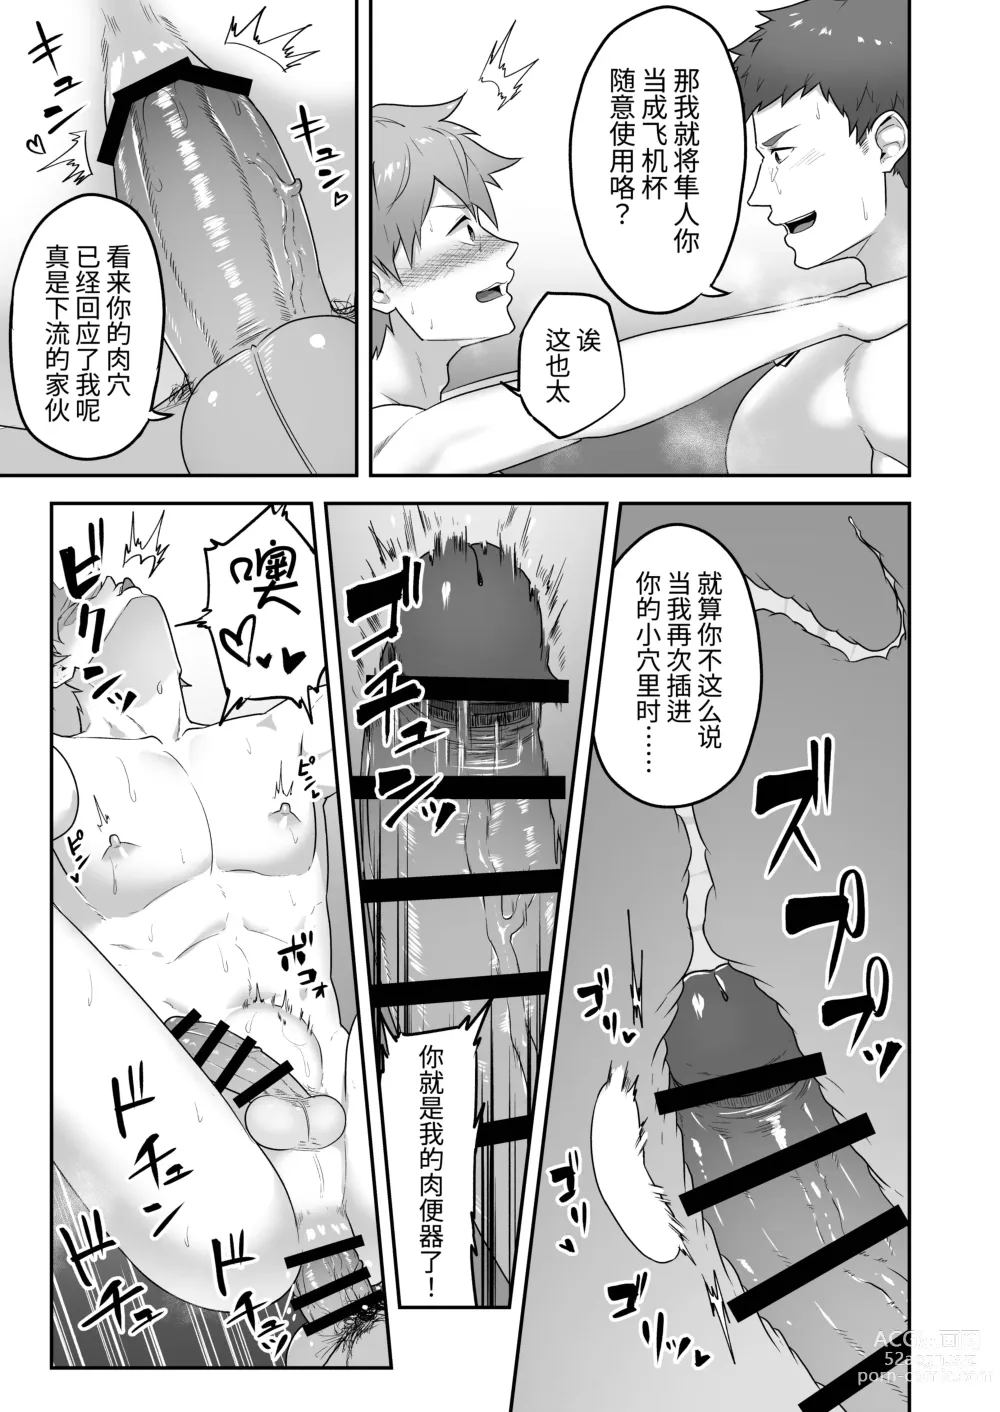 Page 6 of doujinshi 里表社交帐号